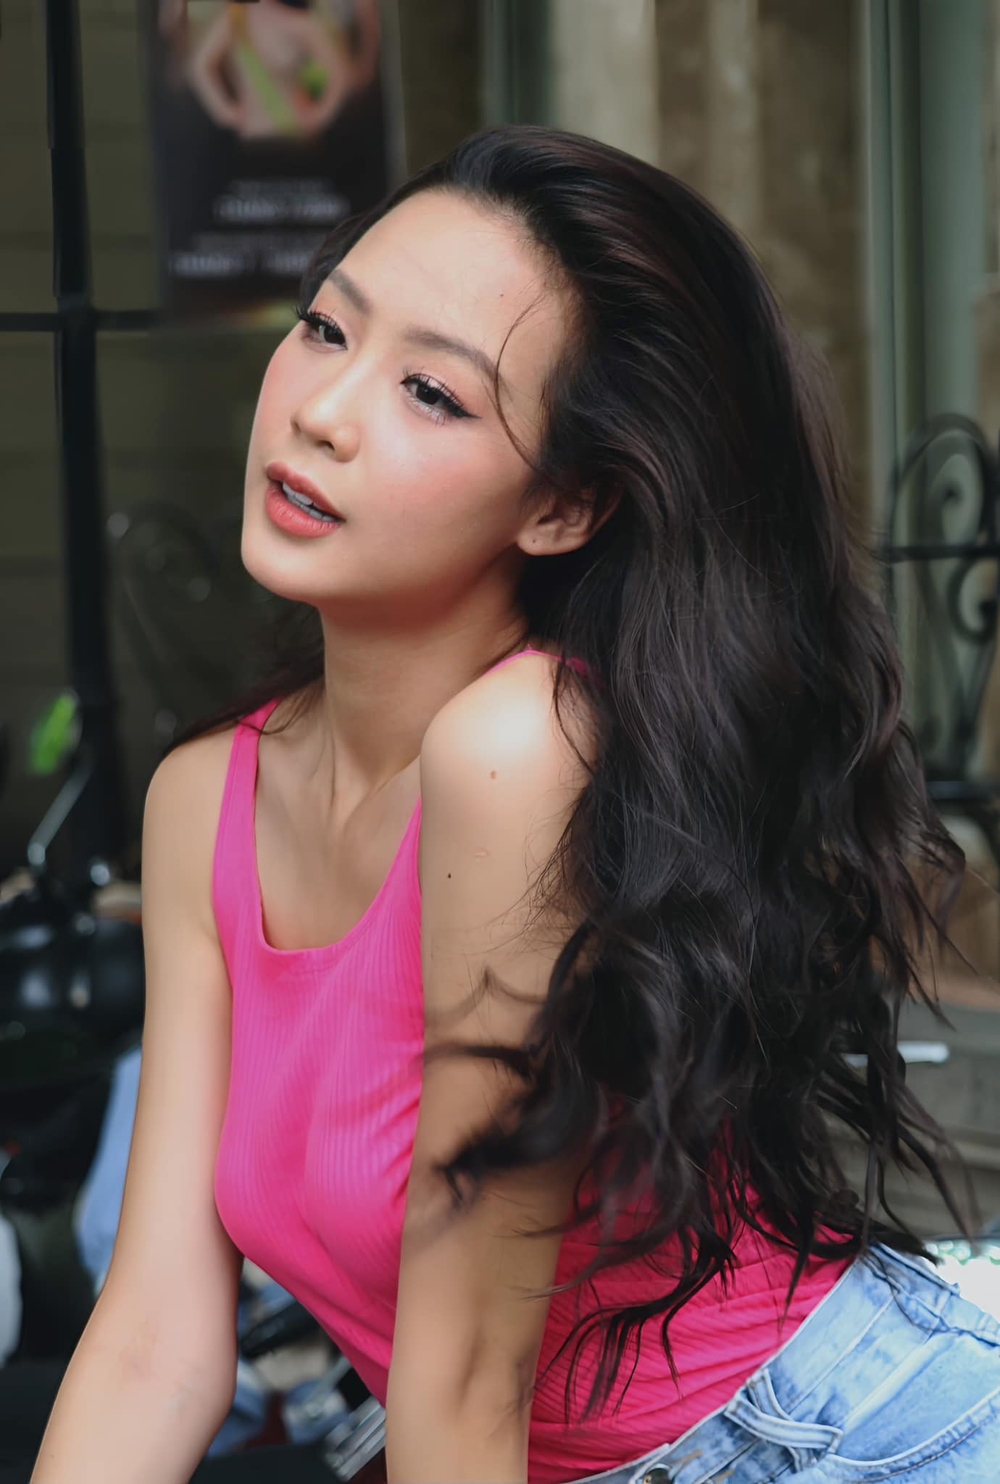 Biến động của Top 3 Miss World Vietnam trong chưa đầy 1 năm: Hoa hậu Mai Phương dính thị phi liên tục, bị Á hậu vượt mặt? - Ảnh 8.